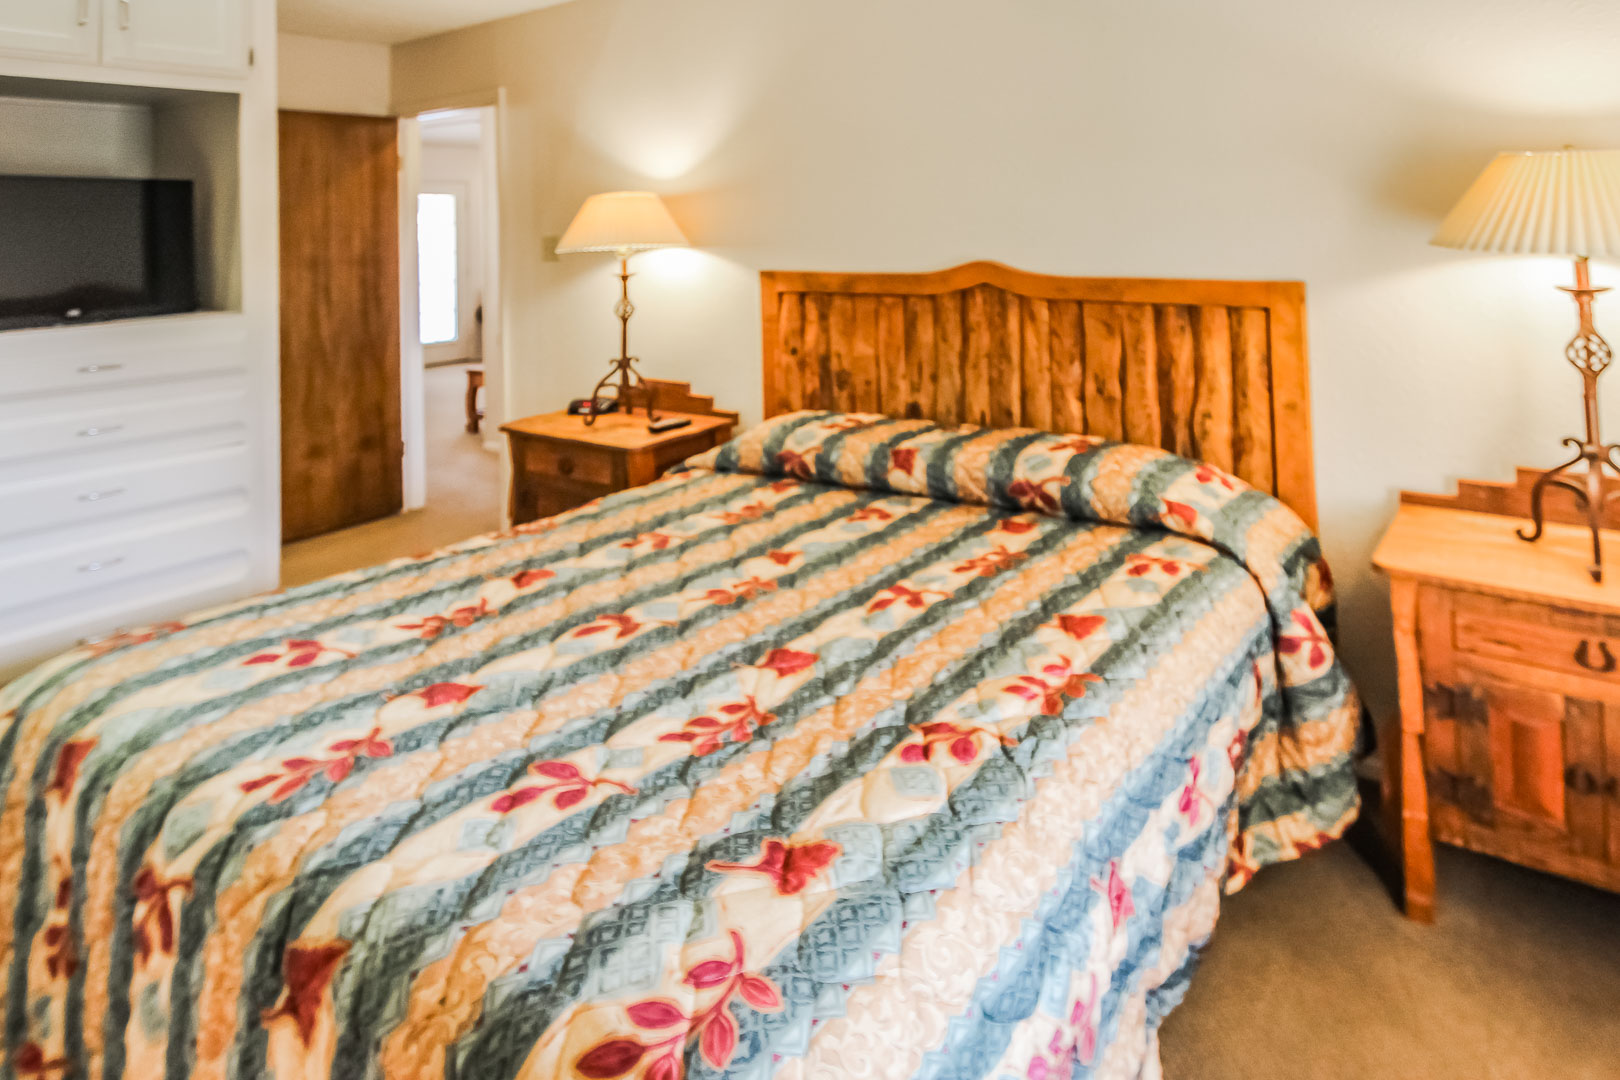 A spacious master bedroom at VRI's Vacation Village at Lake Travis in Texas.